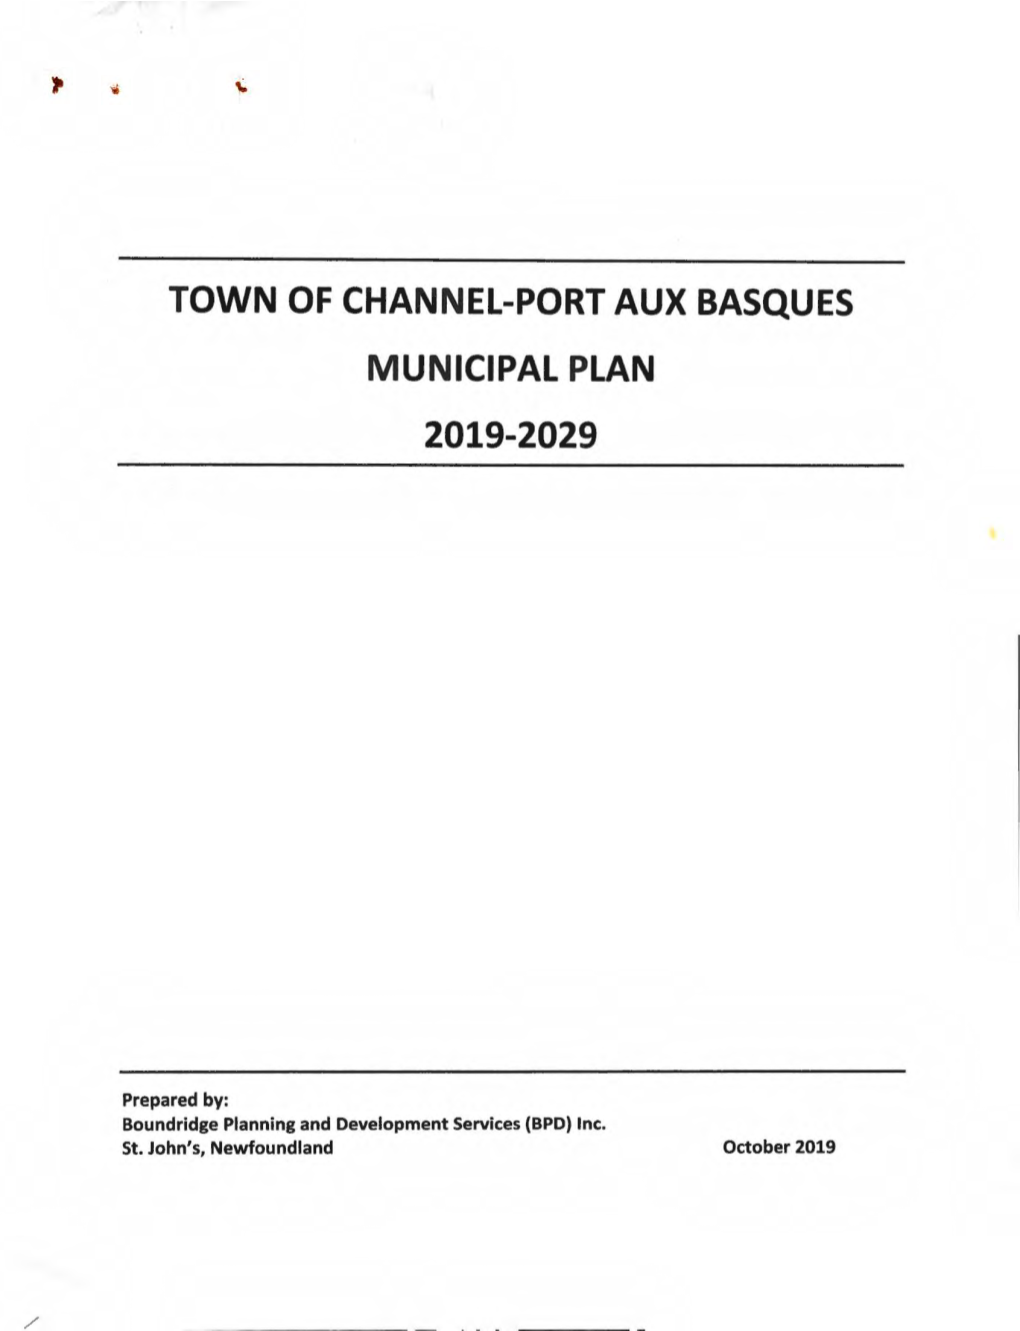 Town of Channel-Port Aux Basques Municipal Plan 2019-2029